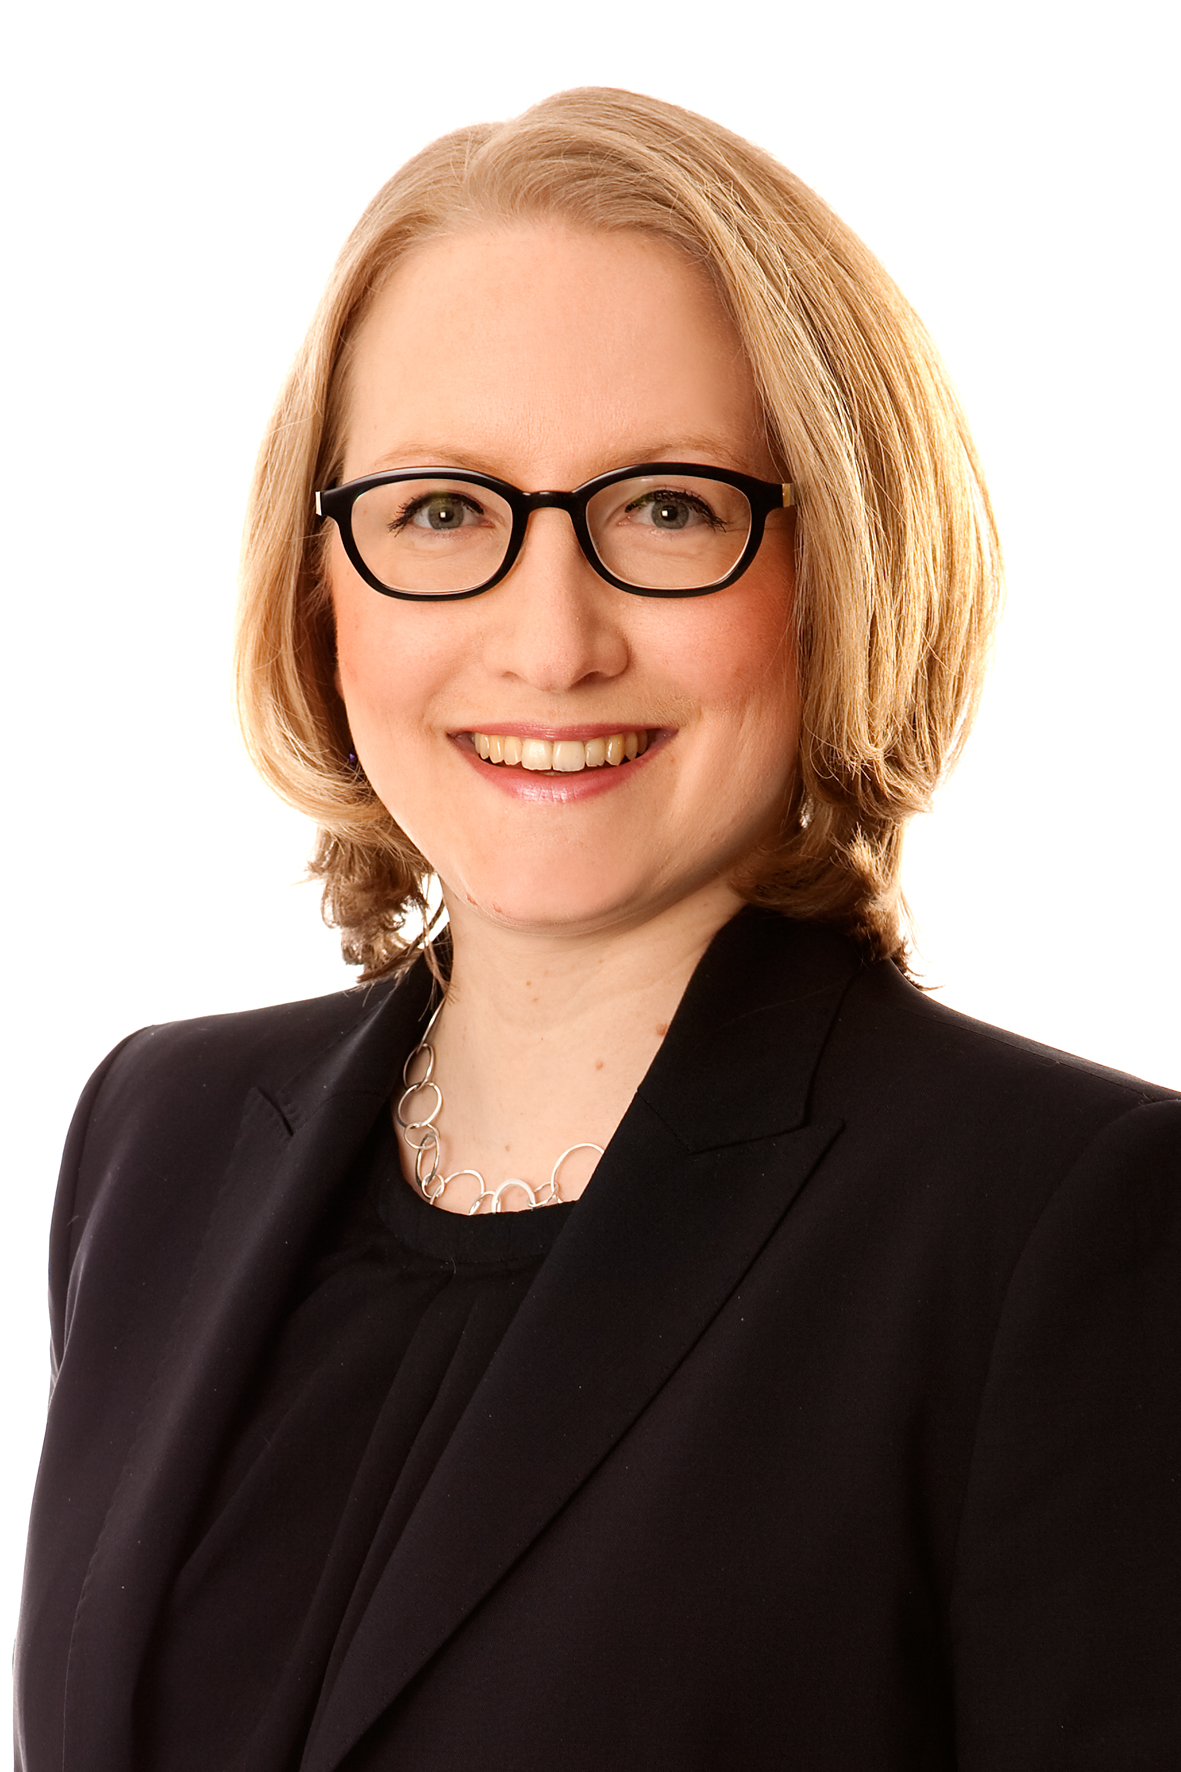 Christina Welsch, CFO of Conergy